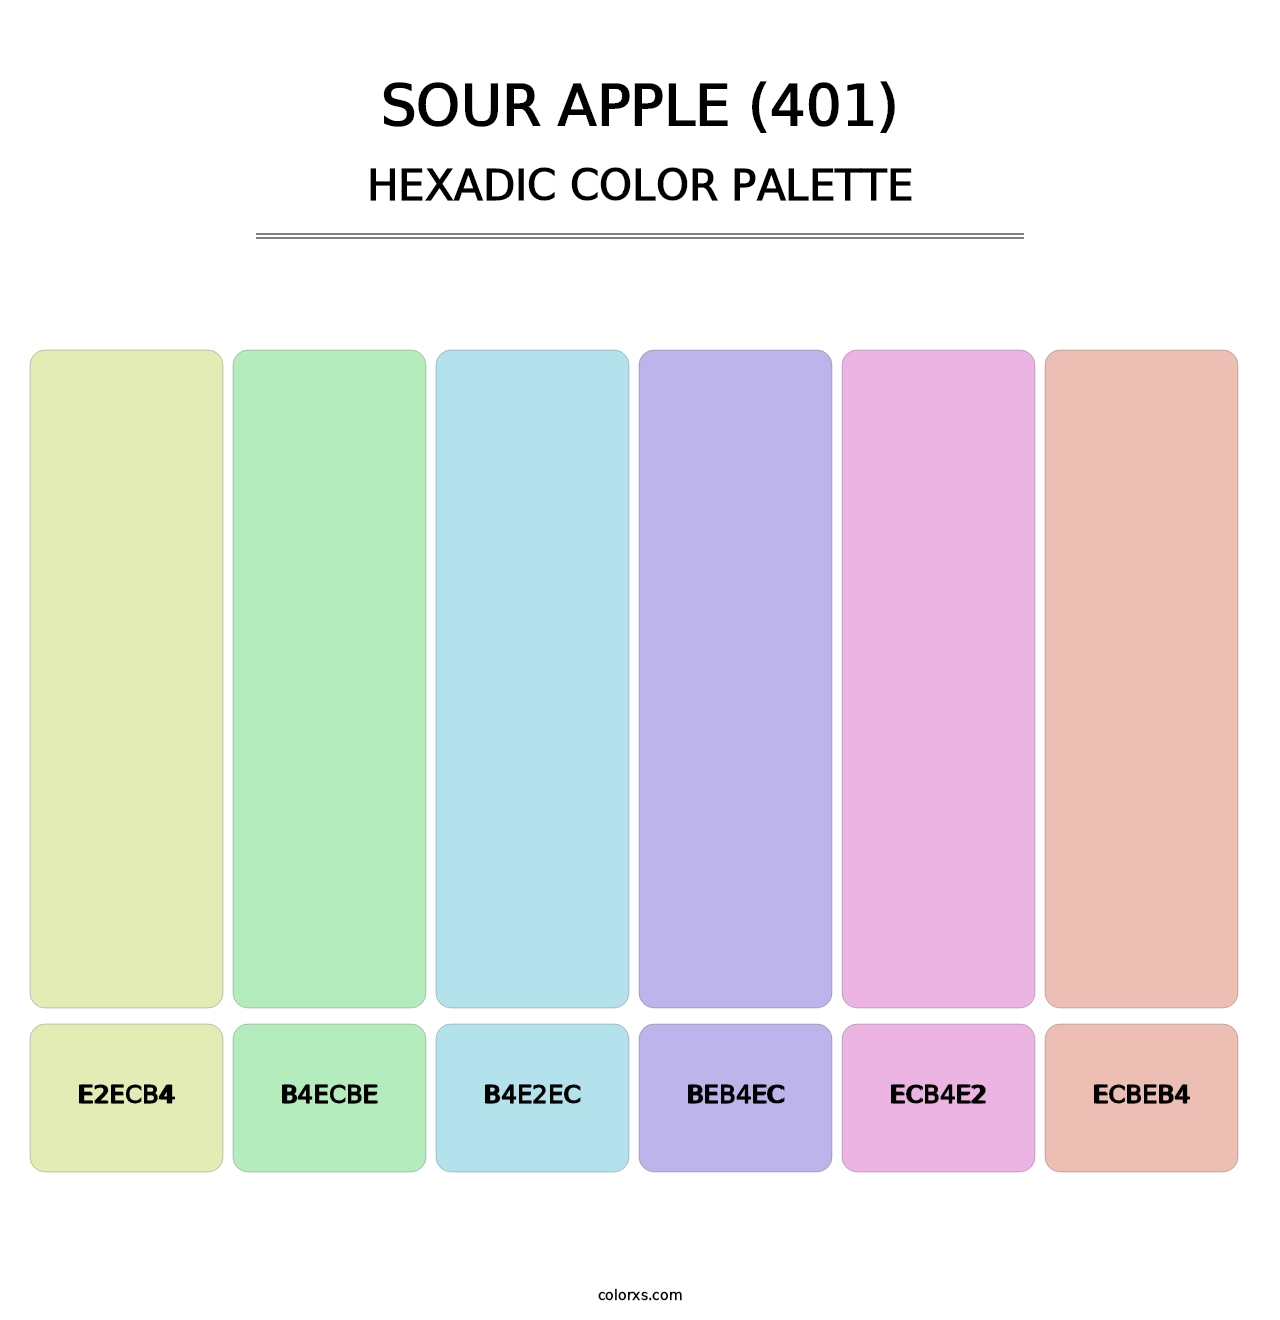 Sour Apple (401) - Hexadic Color Palette